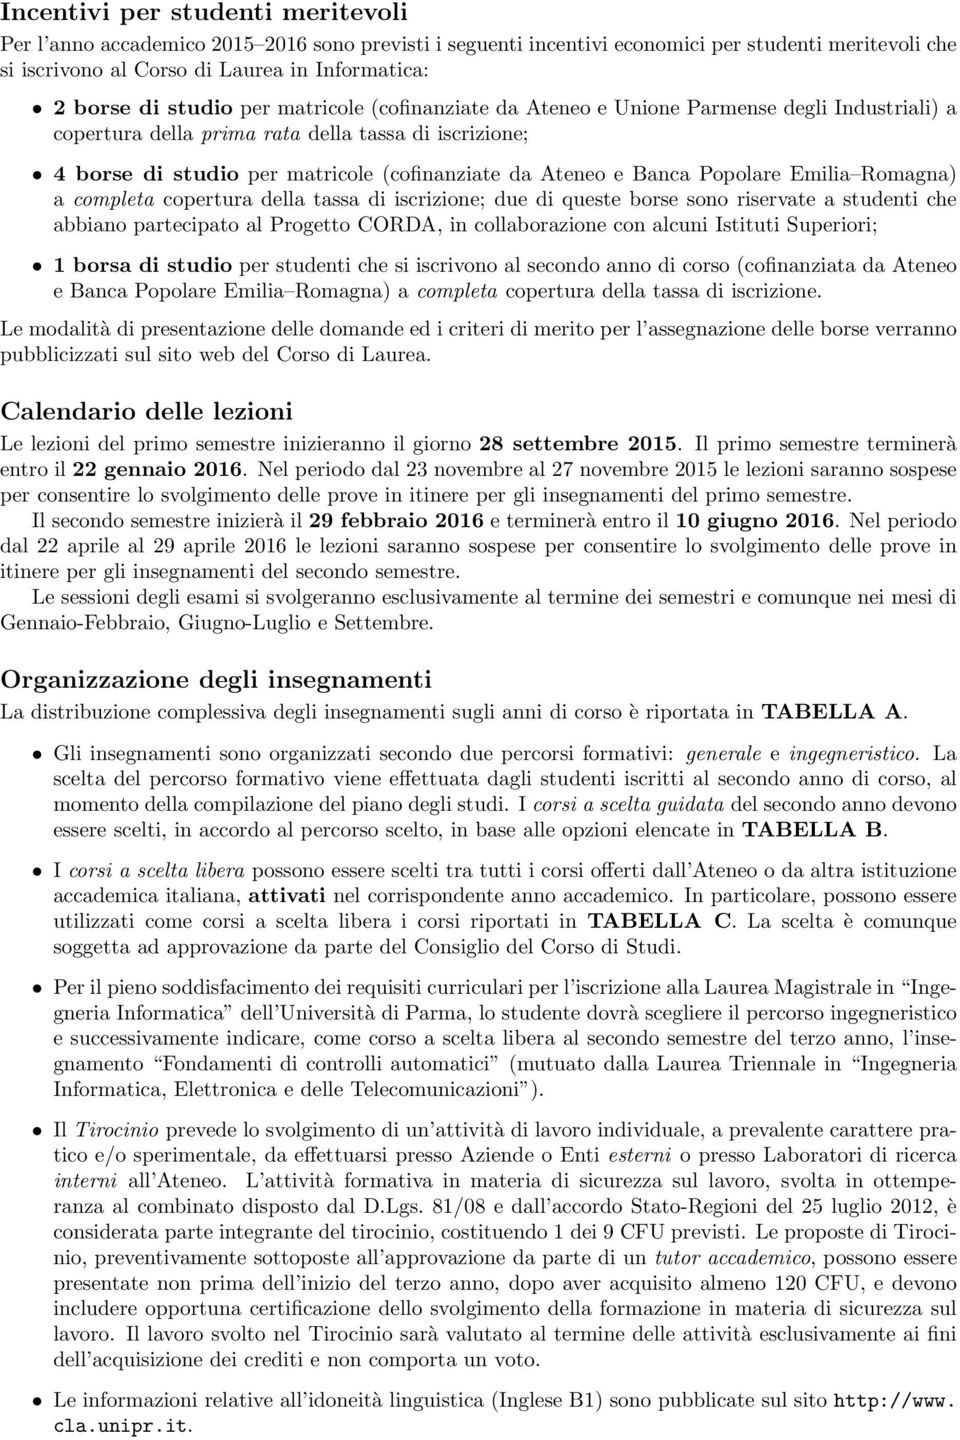 Banca Popolare Emilia Romagna) a completa copertura della tassa di iscrizione; due di queste borse sono riservate a studenti che abbiano partecipato al Progetto CORDA, in collaborazione con alcuni